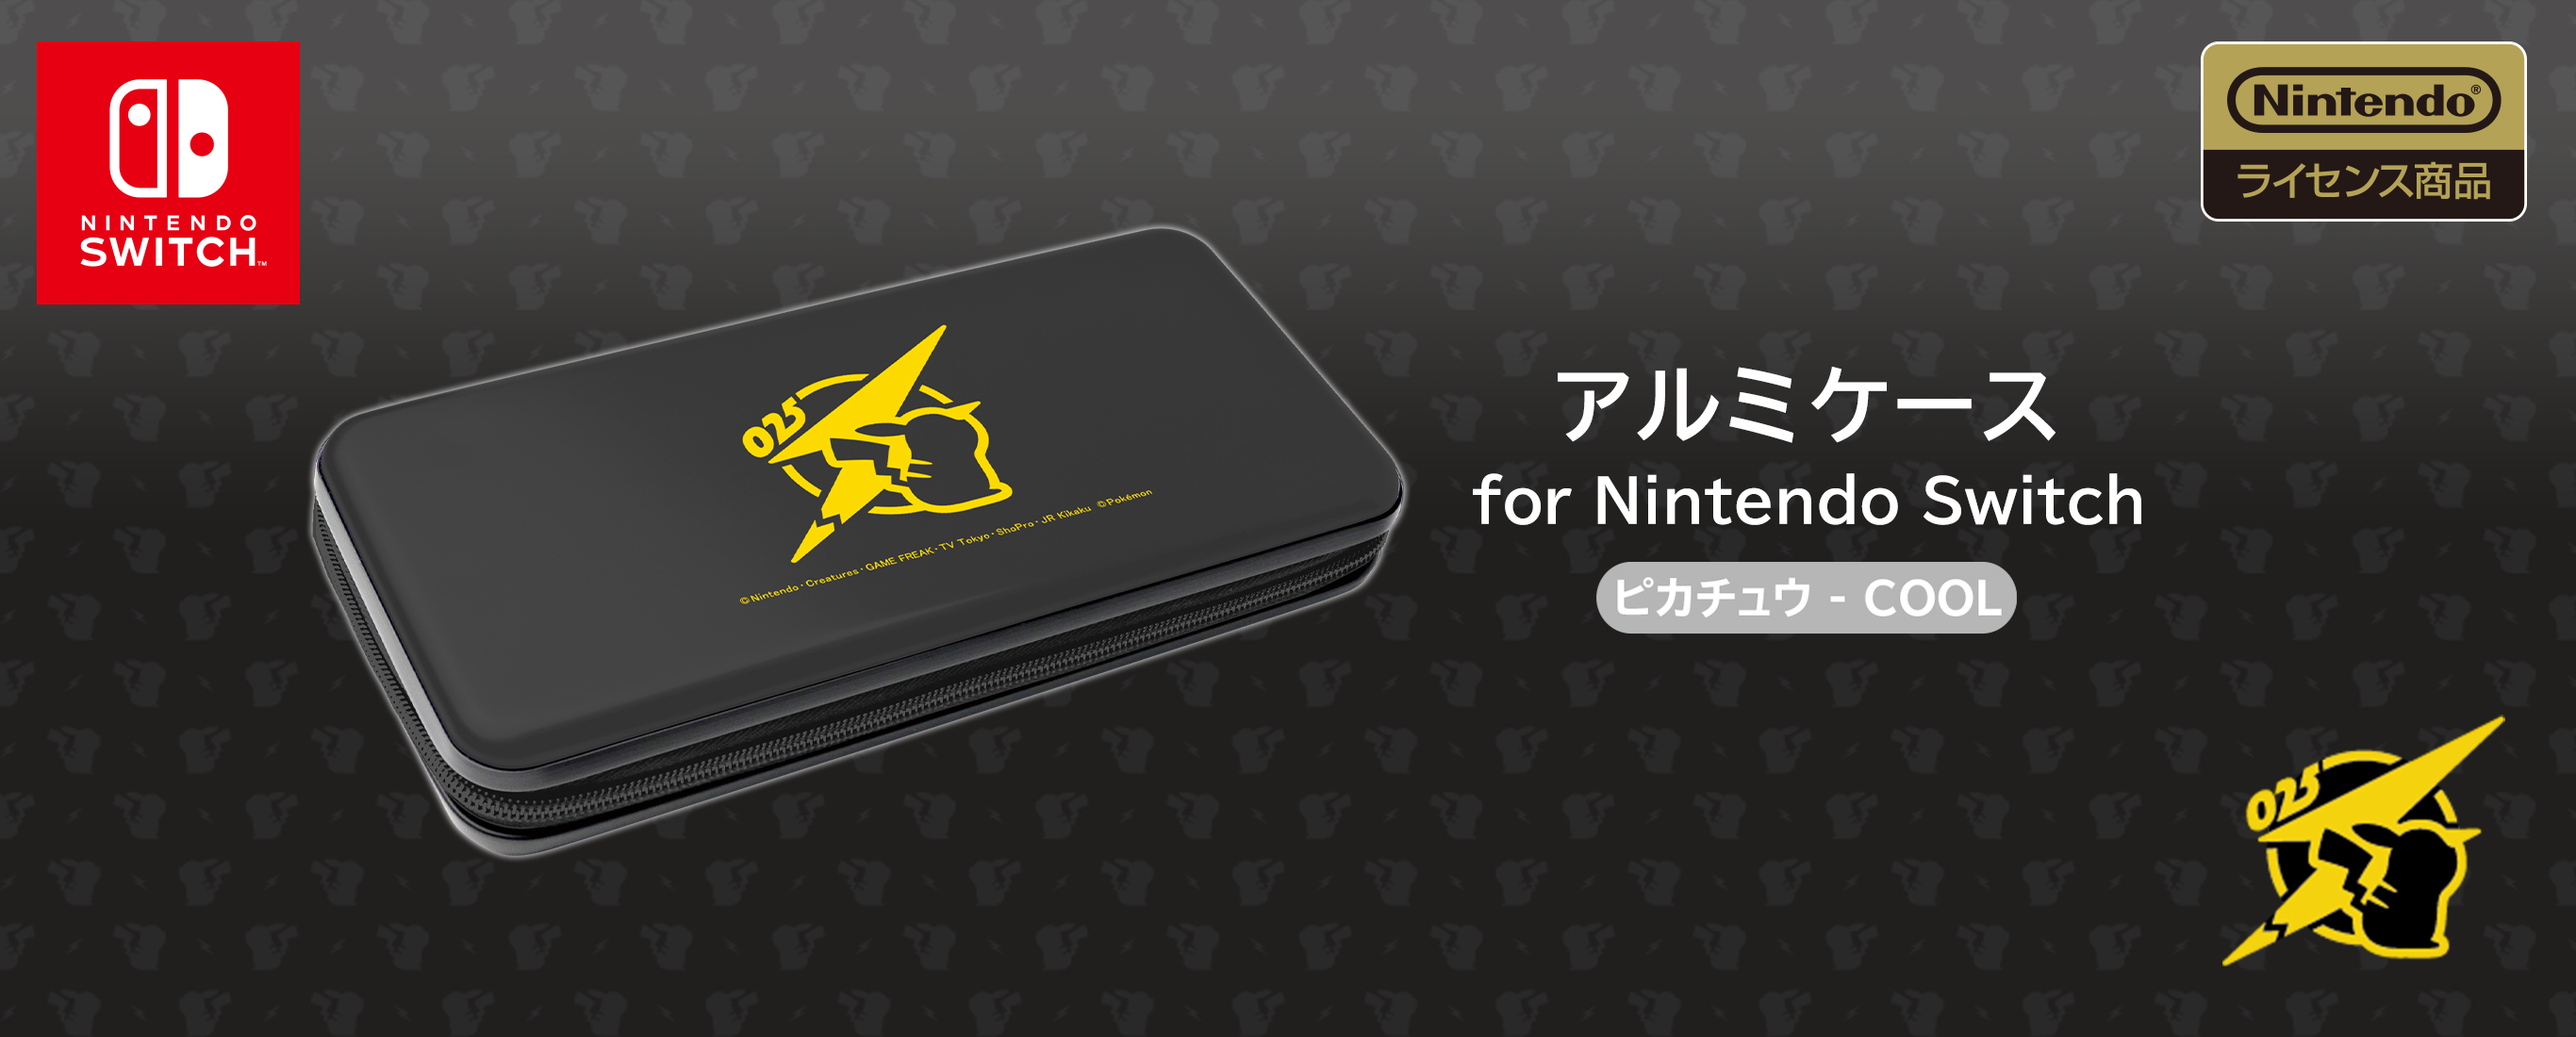 株式会社 HORI | アルミケース for Nintendo Switch ピカチュウ – COOL